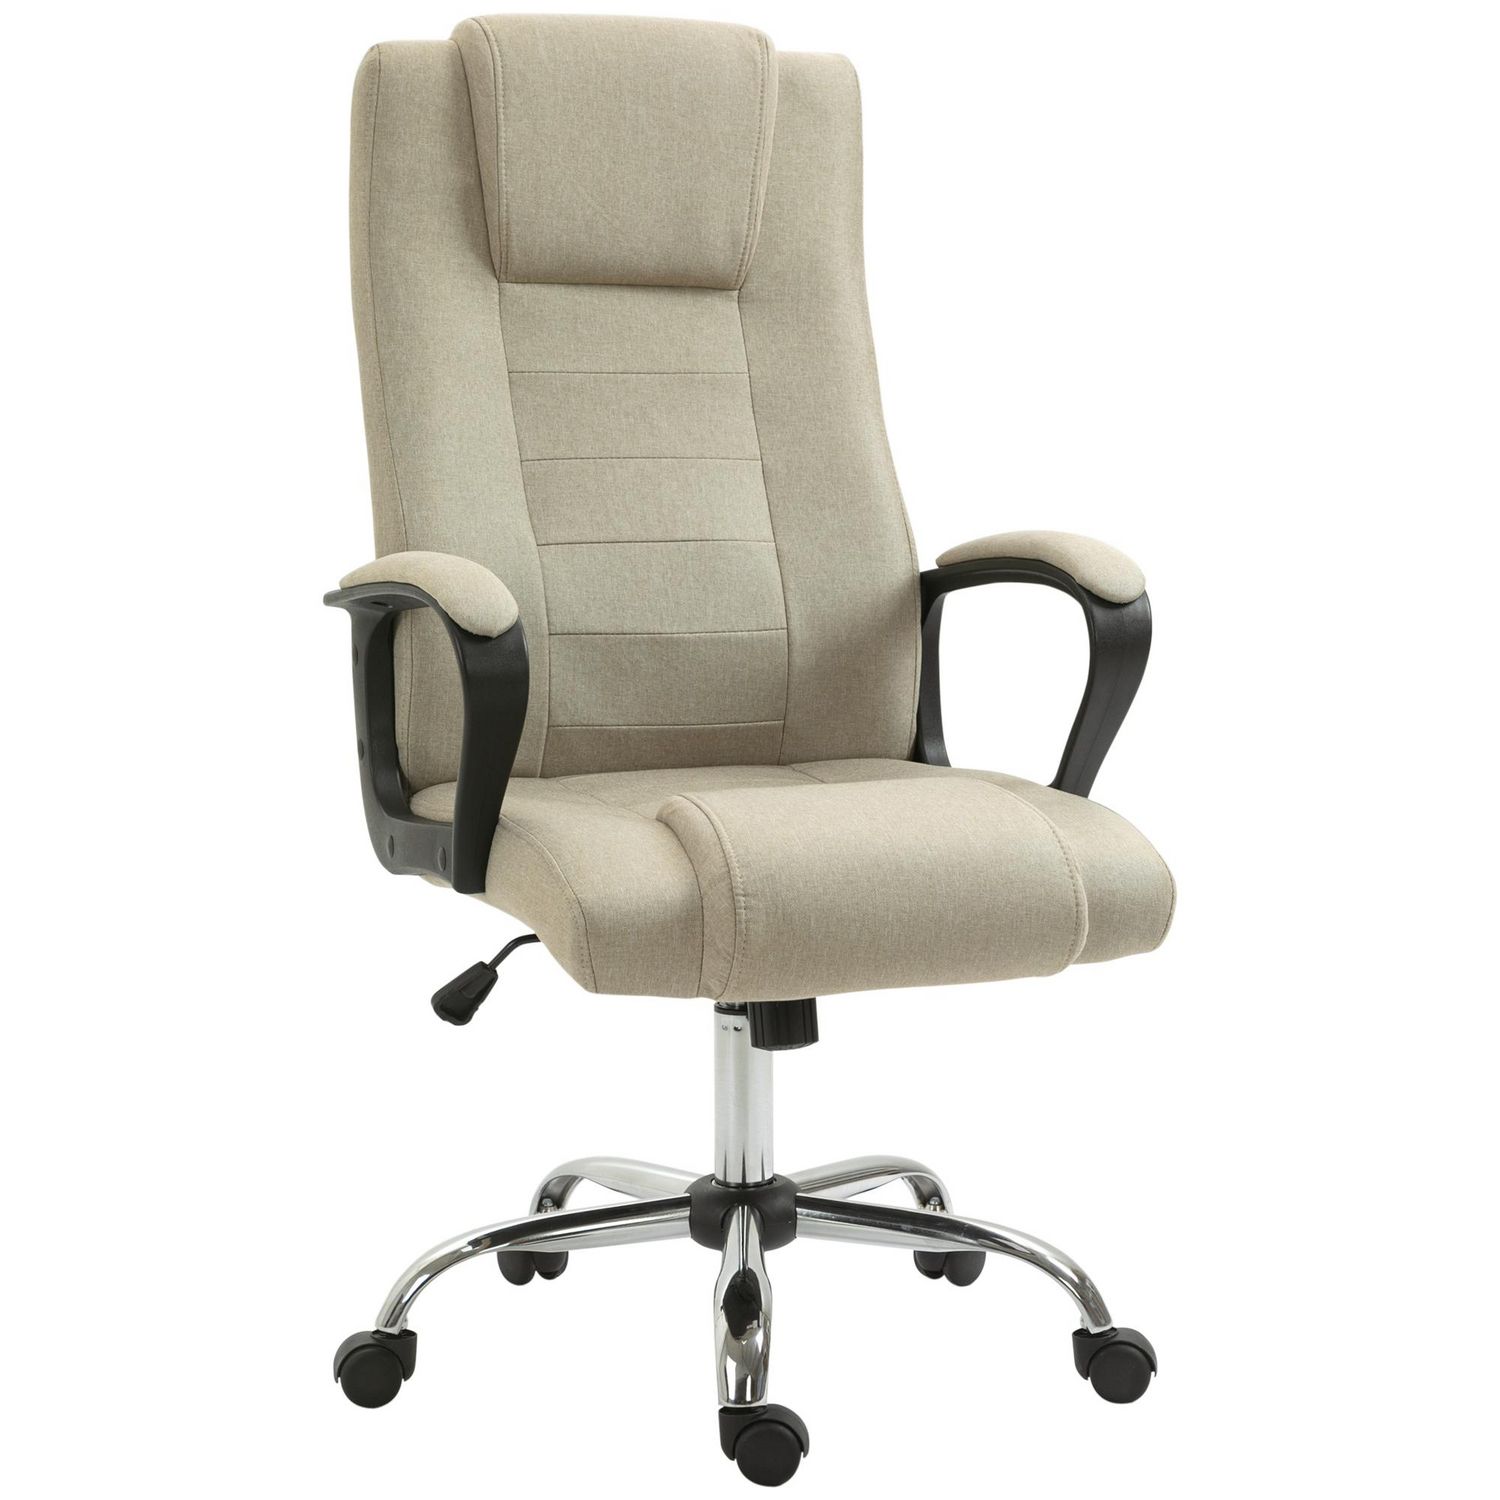 Meilleure chaise/Fauteuil de bureau ergonomique pas cher